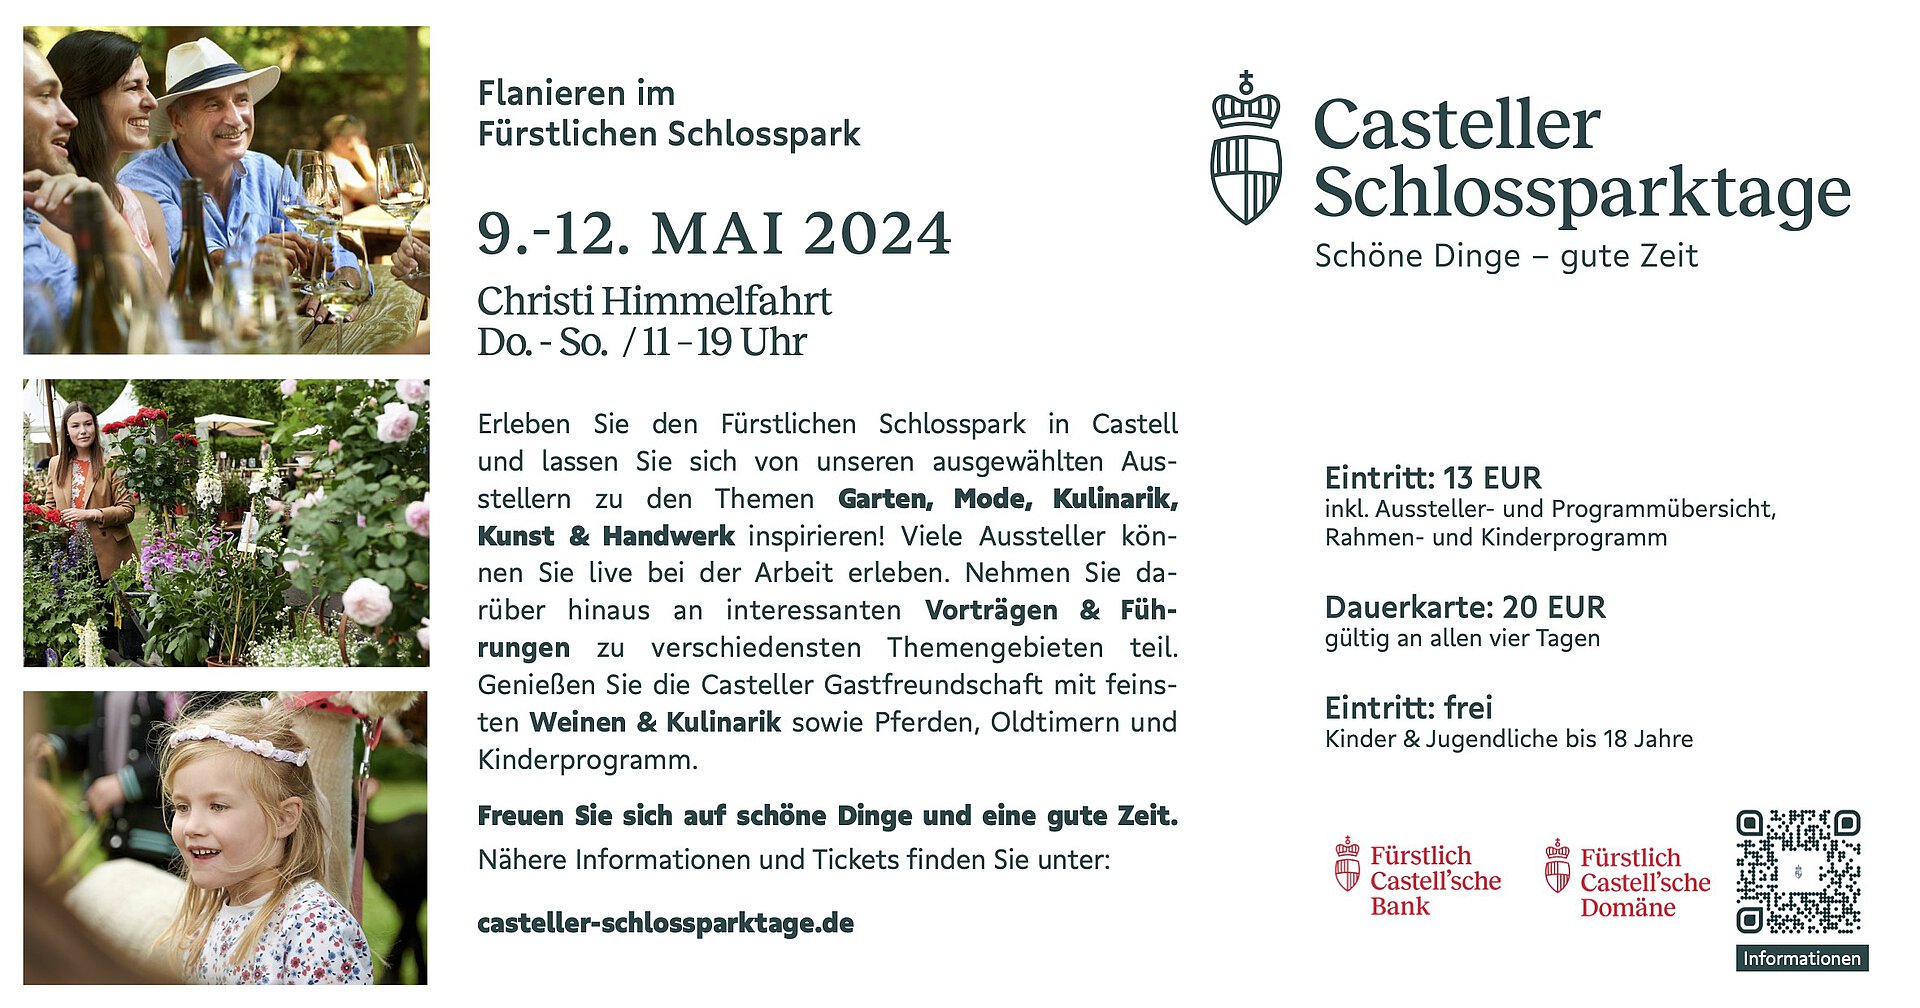 casteller-schlossparktage-2024